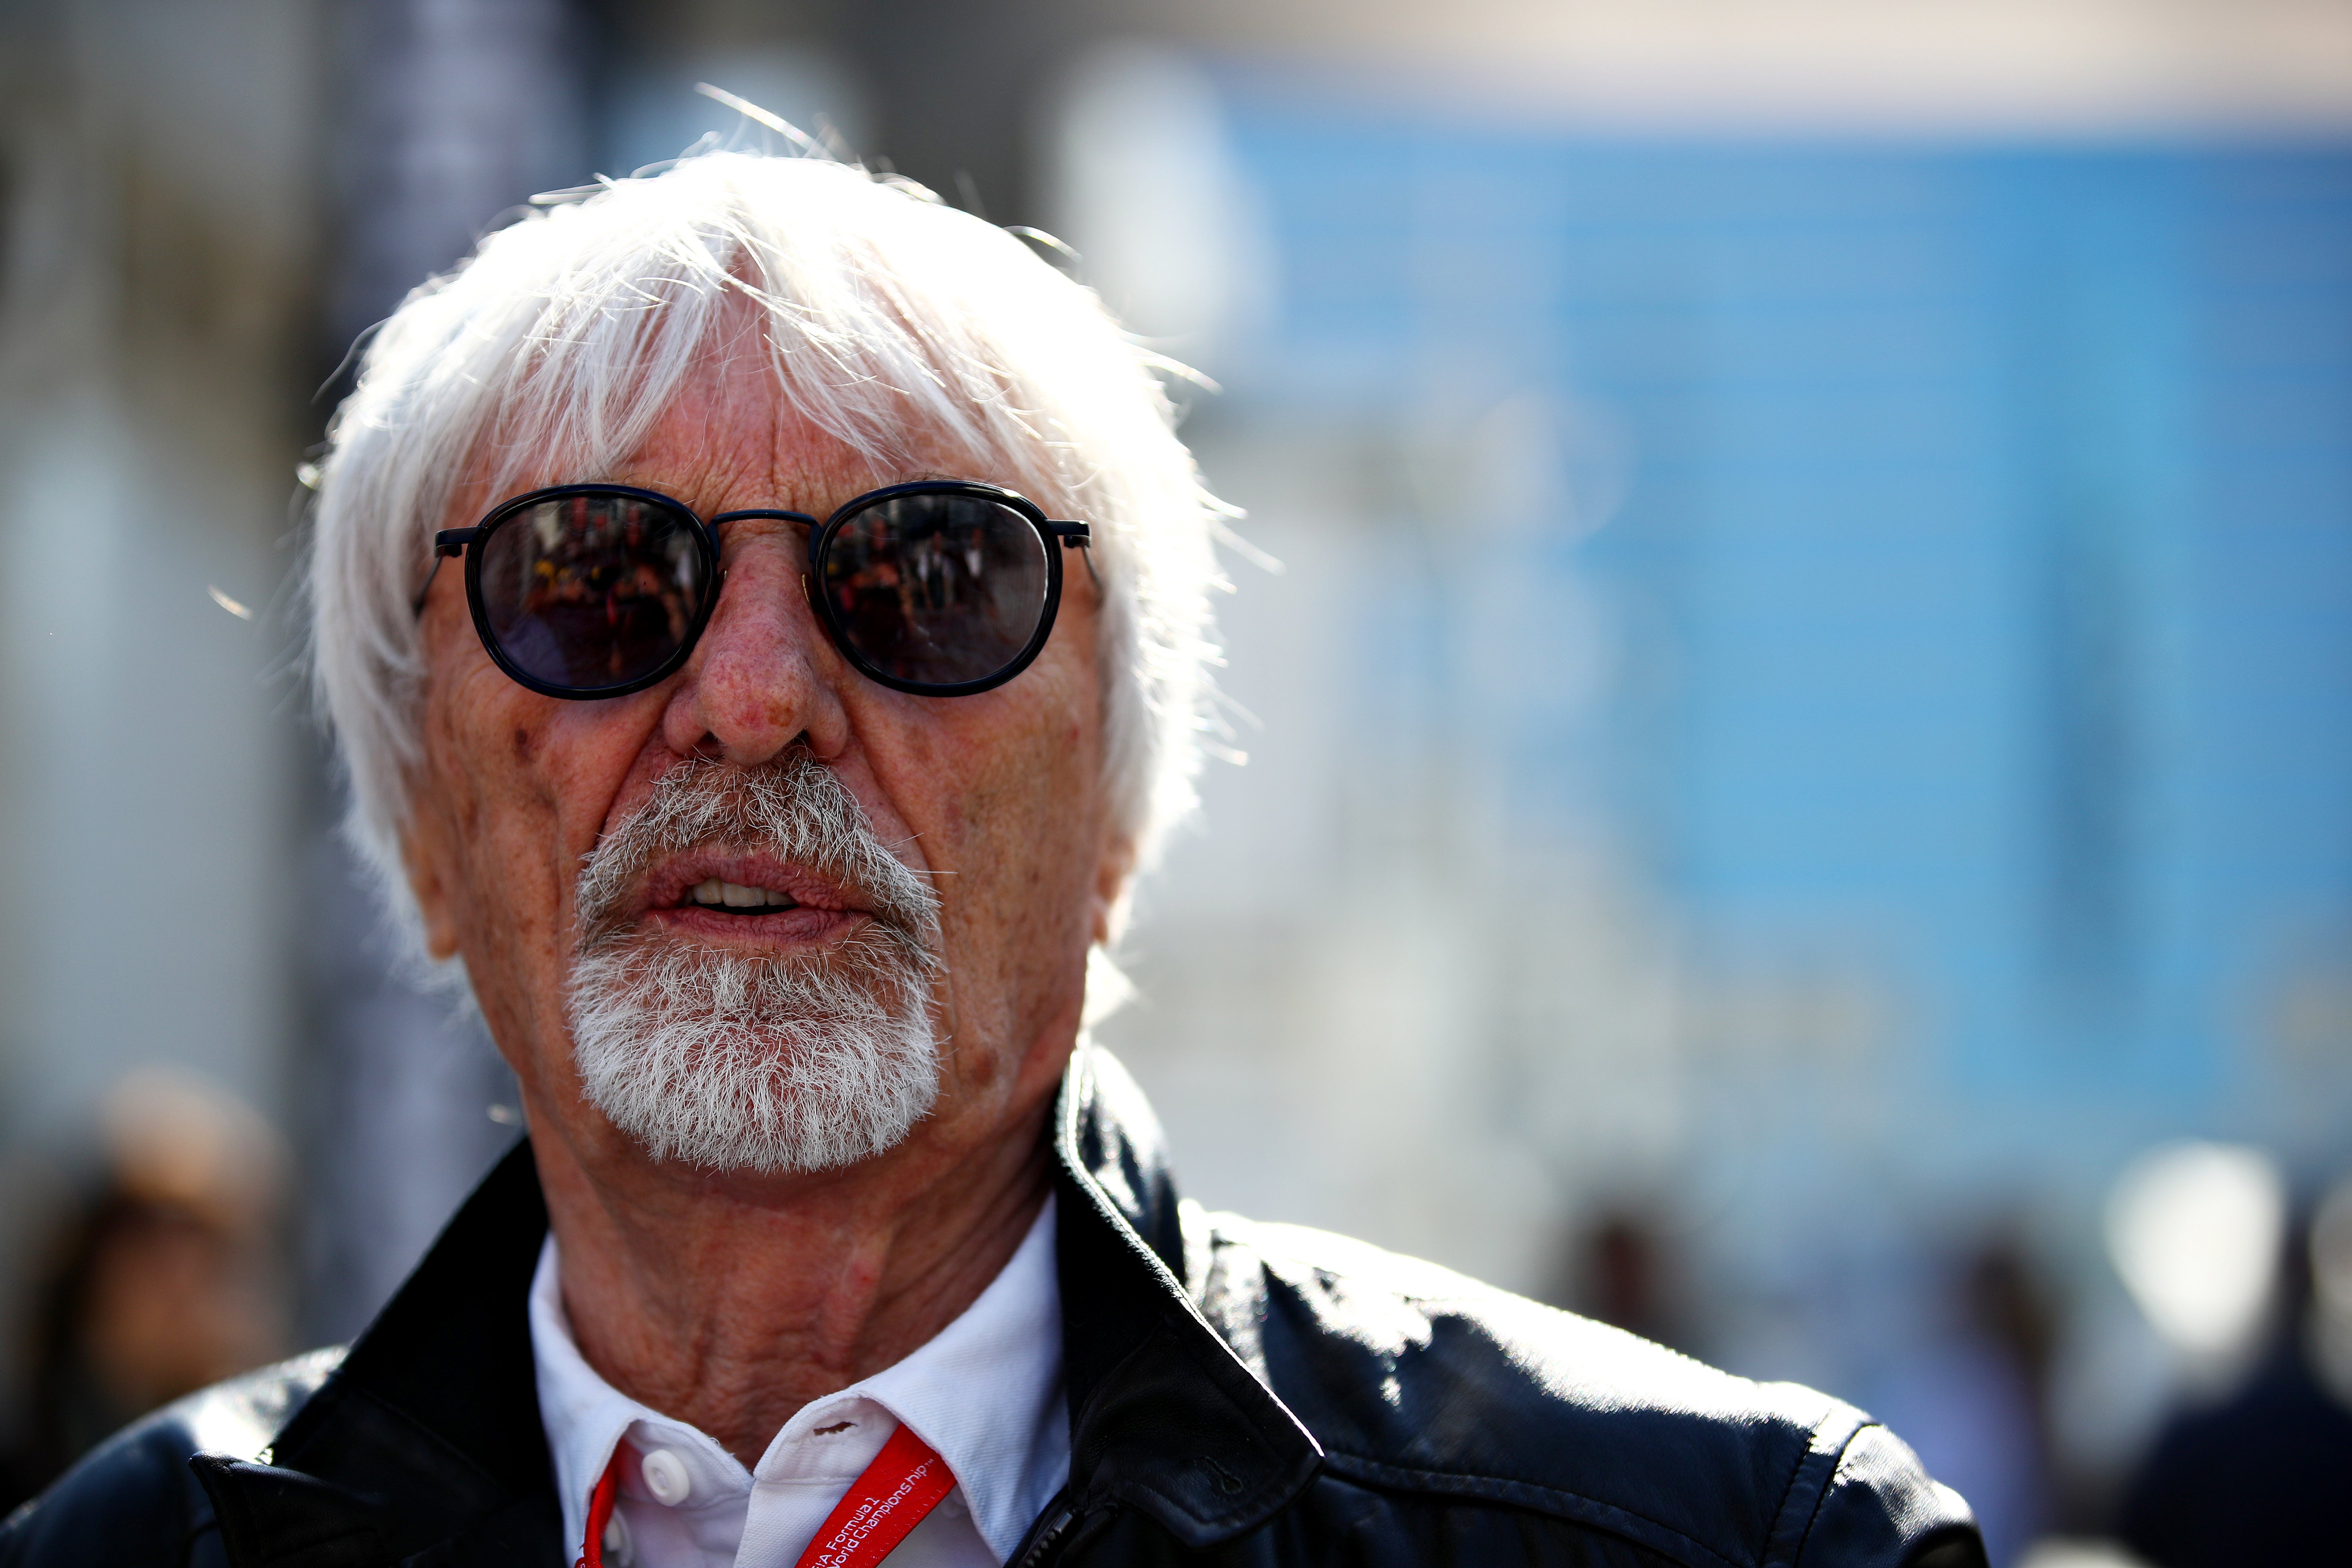 Bernie Ecclestone pictured at the 2019 Azerbaijan Grand Prix